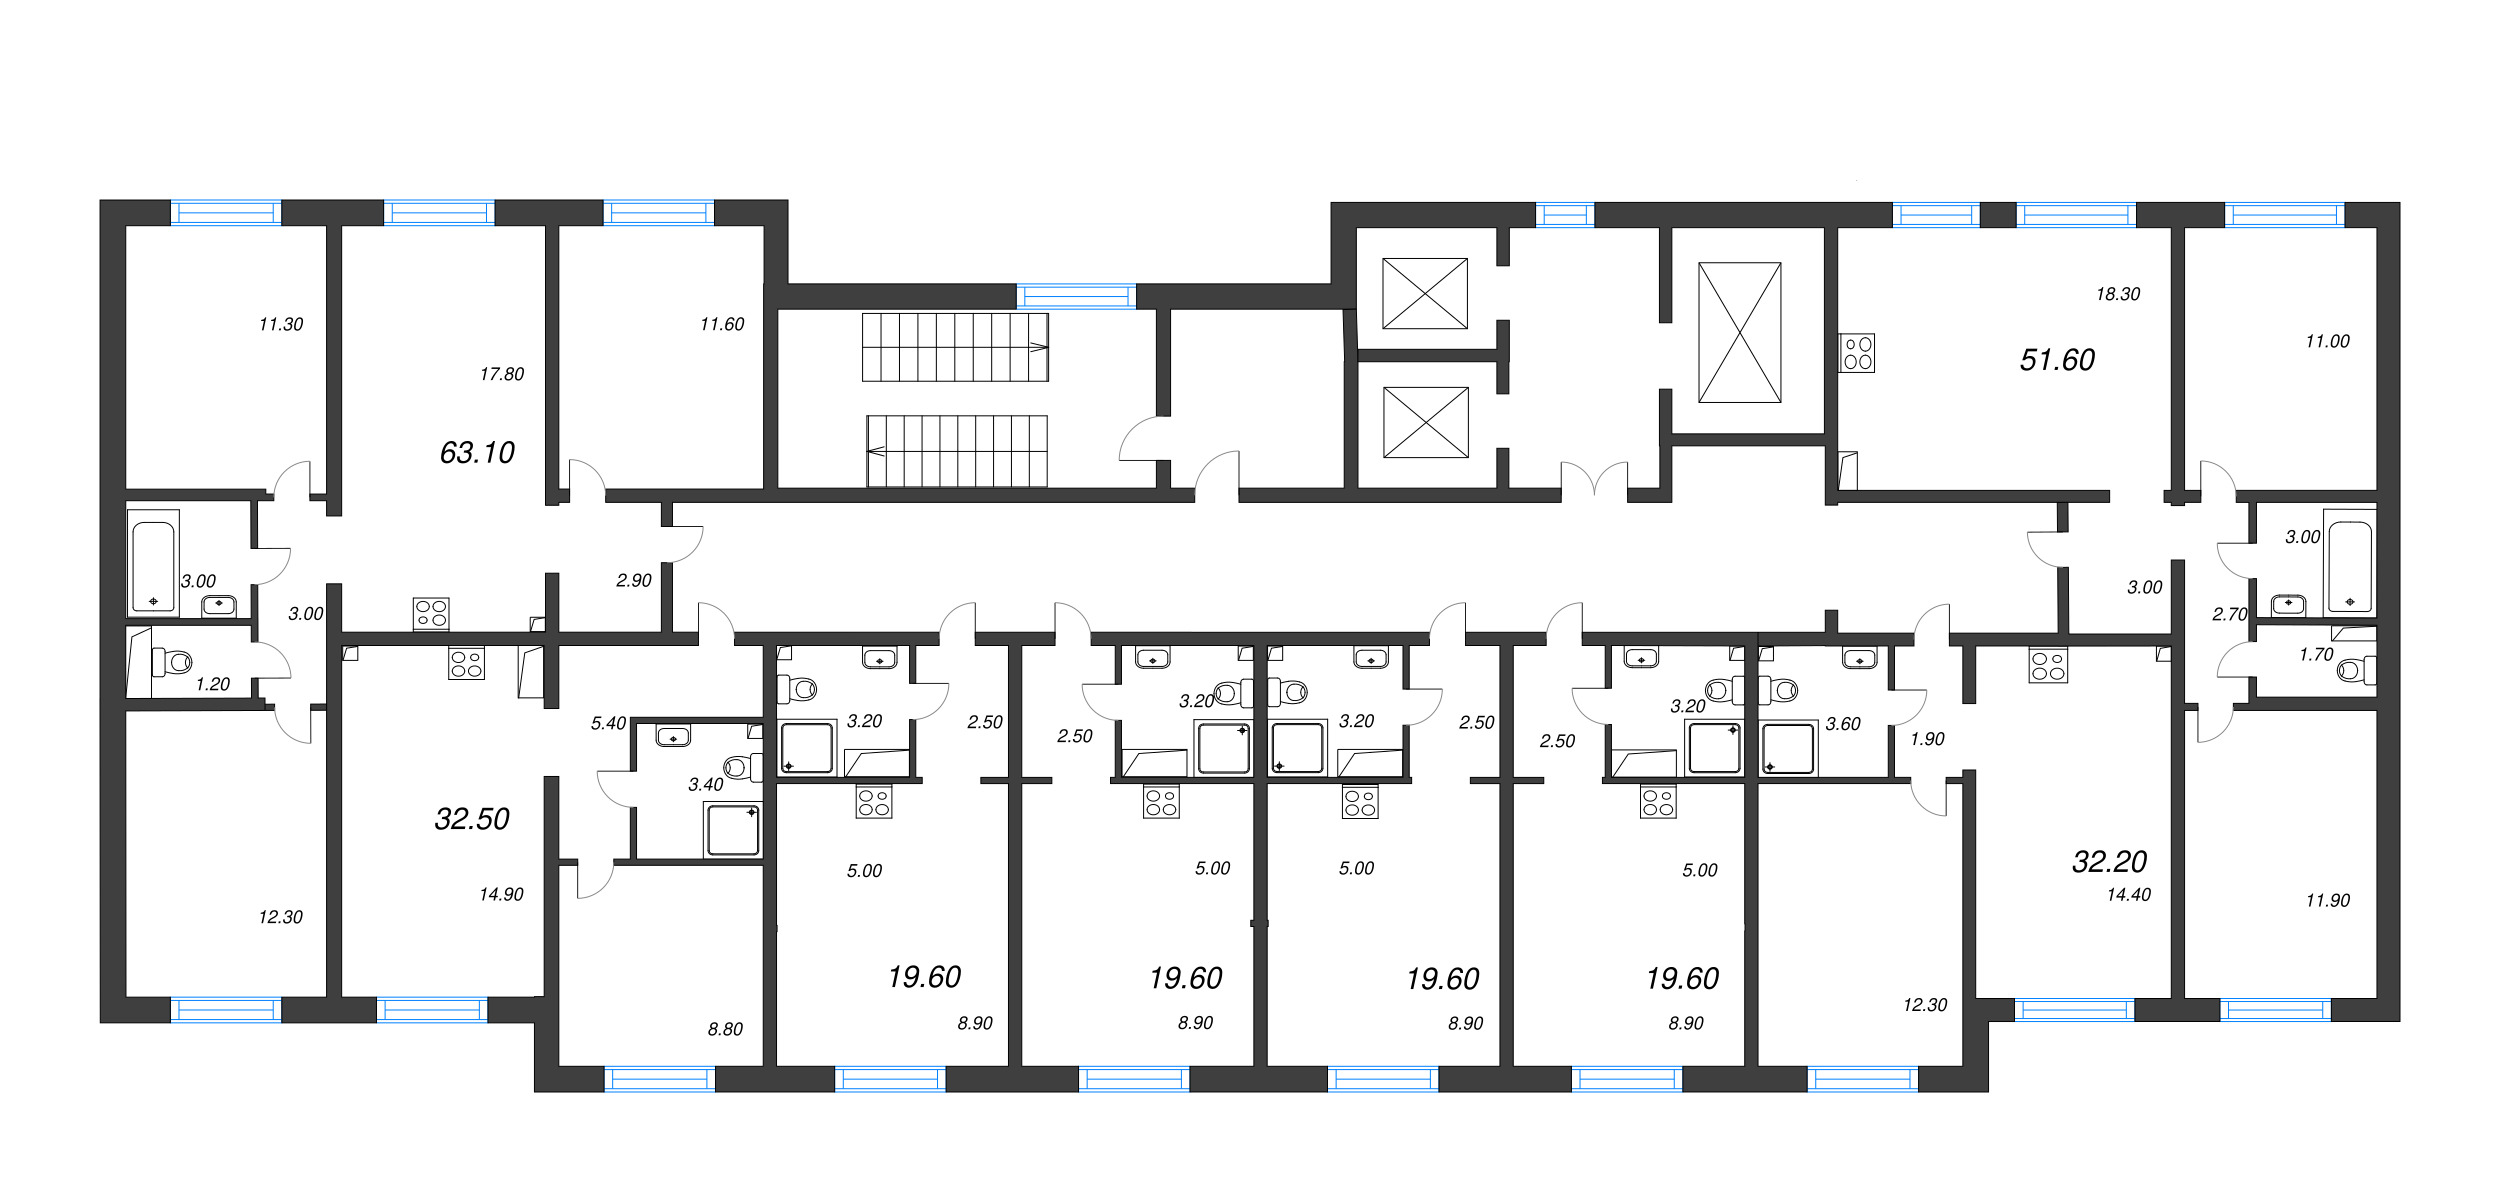 2-комнатная (Евро) квартира, 32.5 м² в ЖК "Цветной город" - планировка этажа